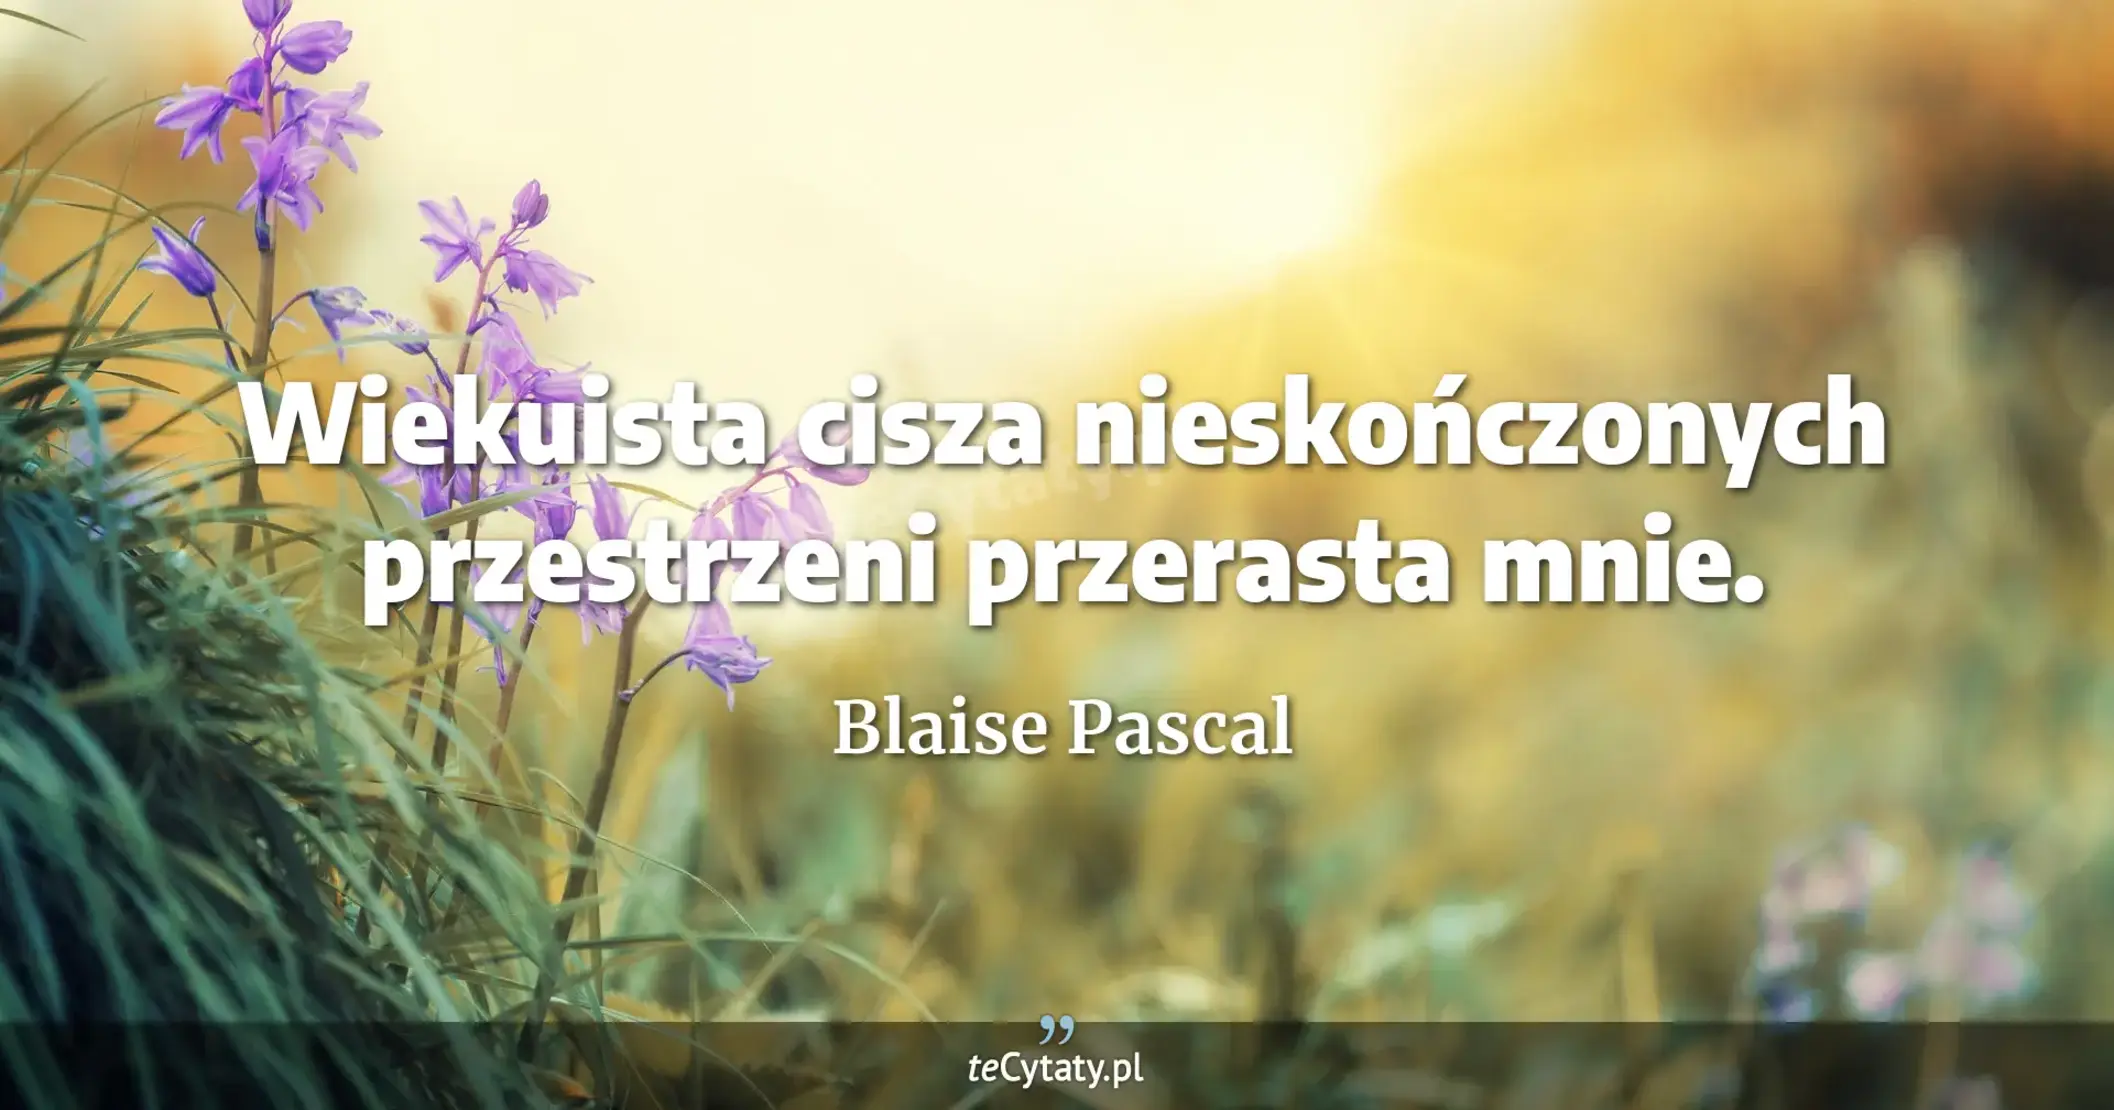 Wiekuista cisza nieskończonych przestrzeni przerasta mnie. - Blaise Pascal